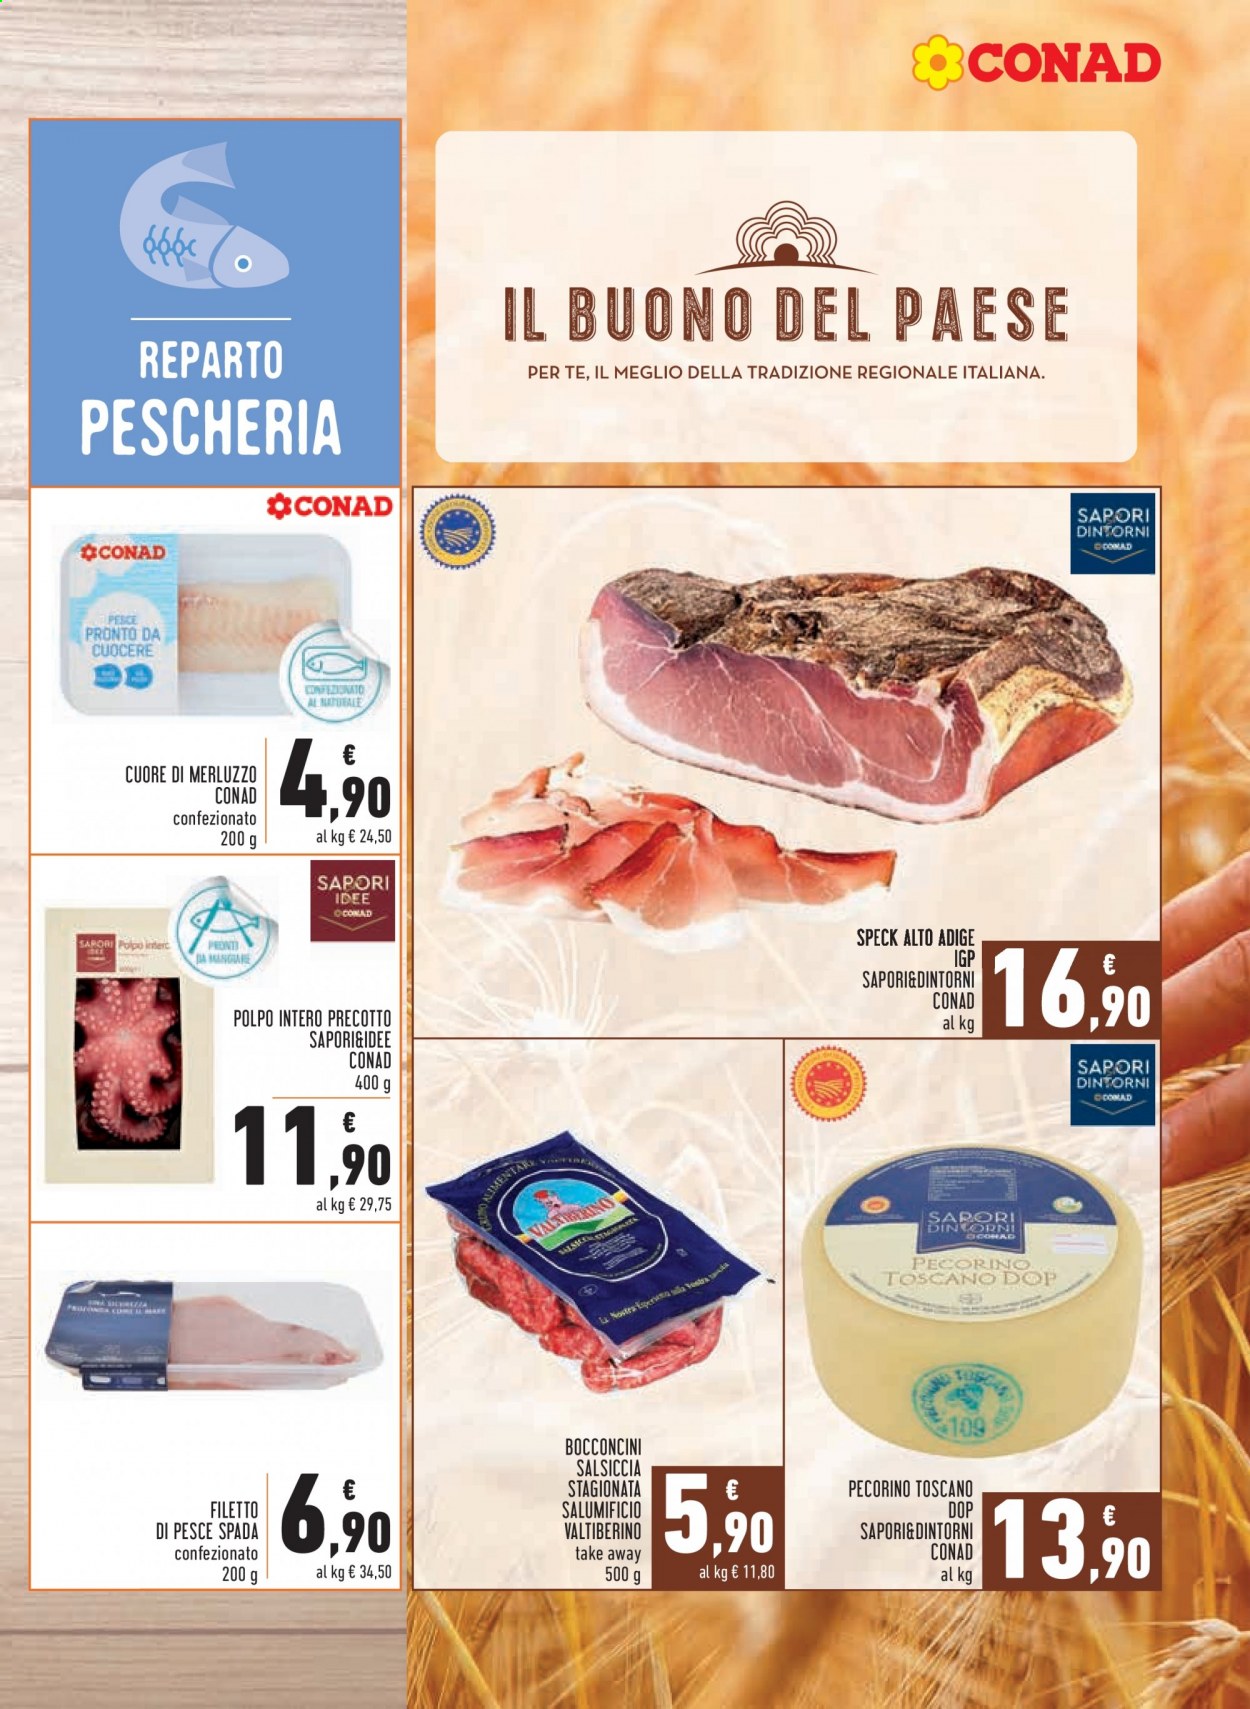 thumbnail - Volantino Conad - 2/6/2021 - 13/6/2021 - Prodotti in offerta - bocconcini, salsiccia, filetto di pesce spada, pesce spada, merluzzo, polpo, speck, salsiccia stagionata, formaggio, pecorino, Pecorino Toscano. Pagina 9.